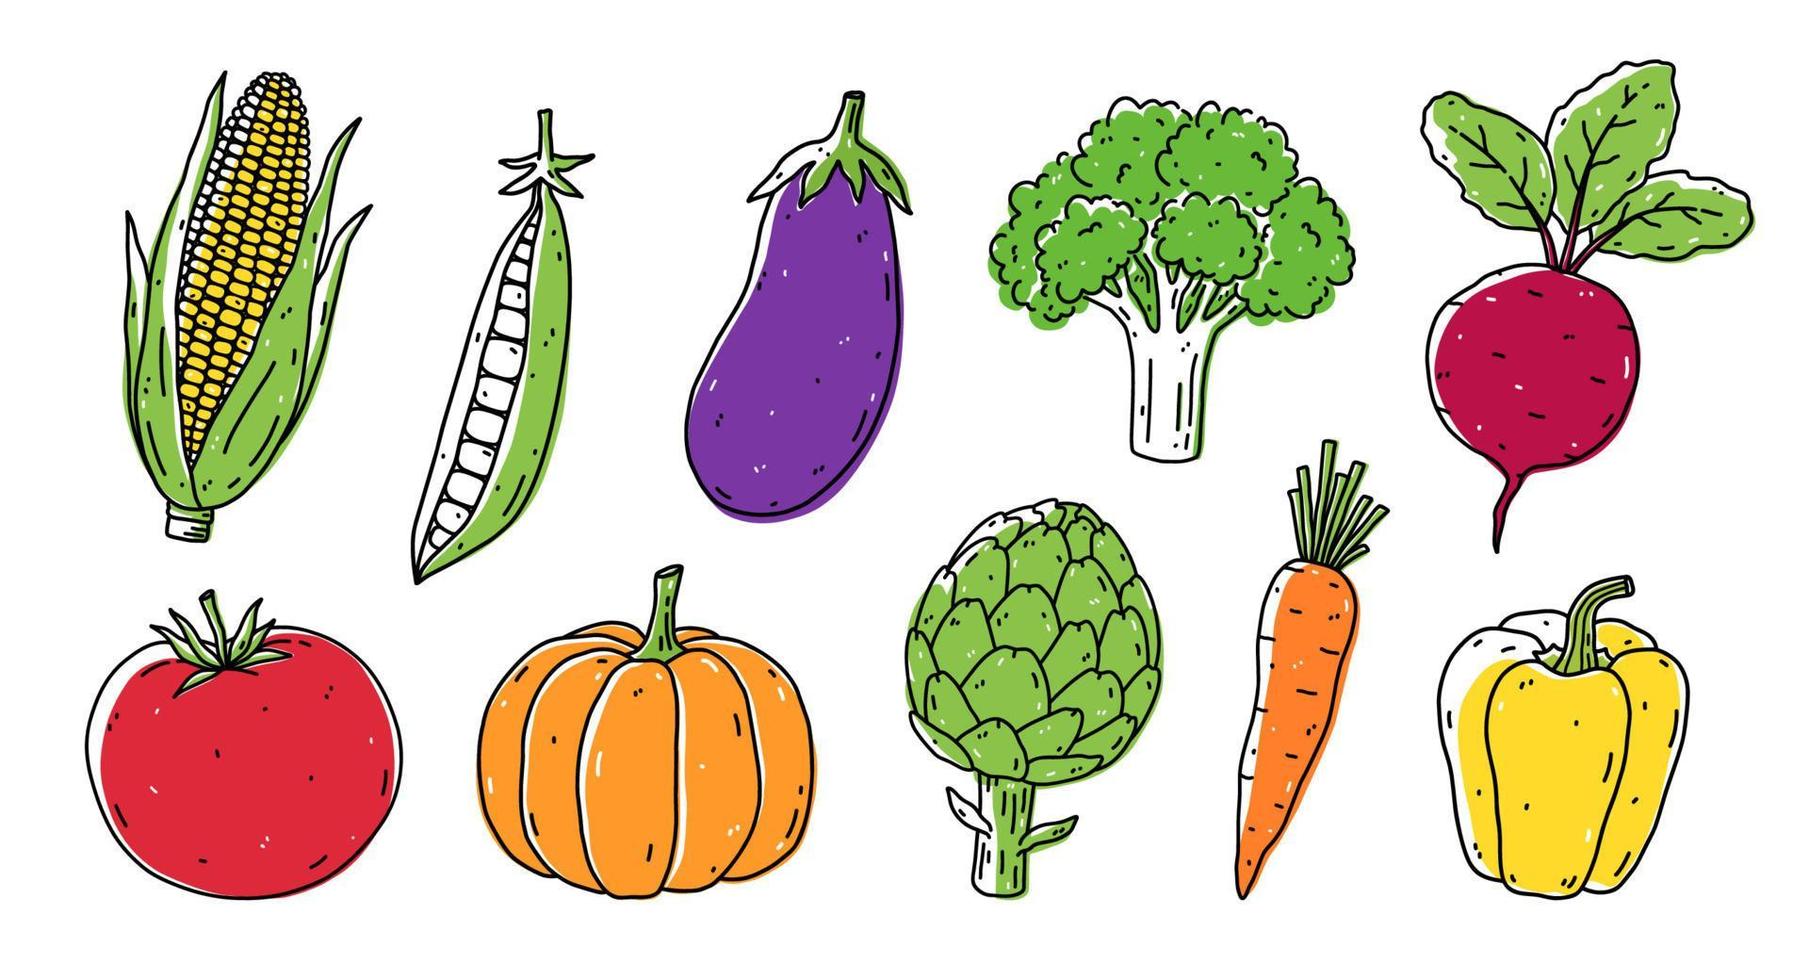 eine reihe von gemüse - mais, erbsen, auberginen, brokkoli, rote bete, tomate, kürbis, artischocke, karotte und paprika. organische gesunde lebensmittel. handgezeichnete Vektorgrafik im Doodle-Stil. vektor